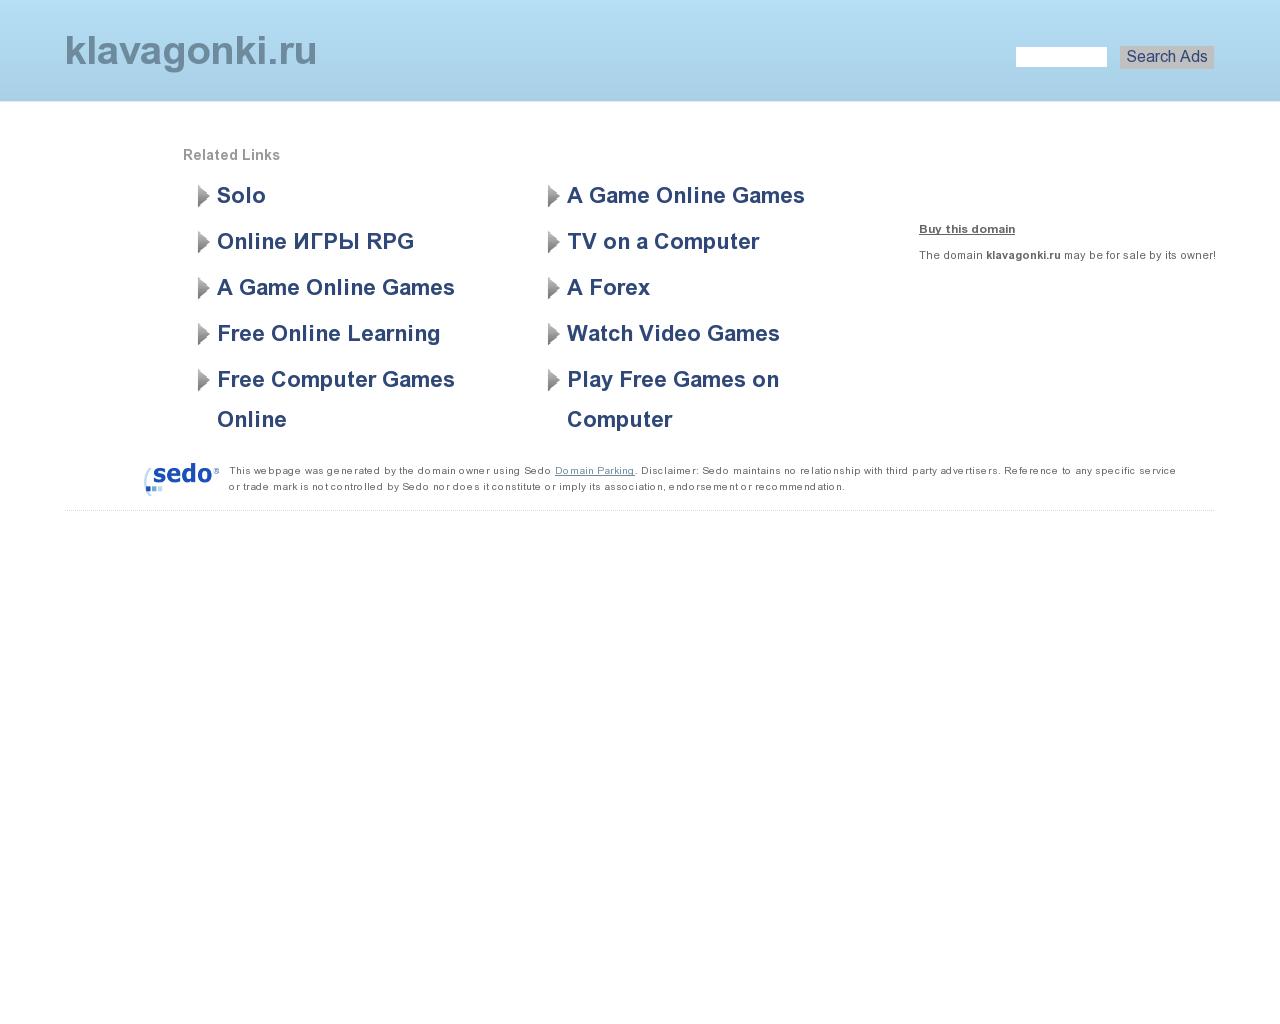 Изображение сайта klavagonki.ru в разрешении 1280x1024